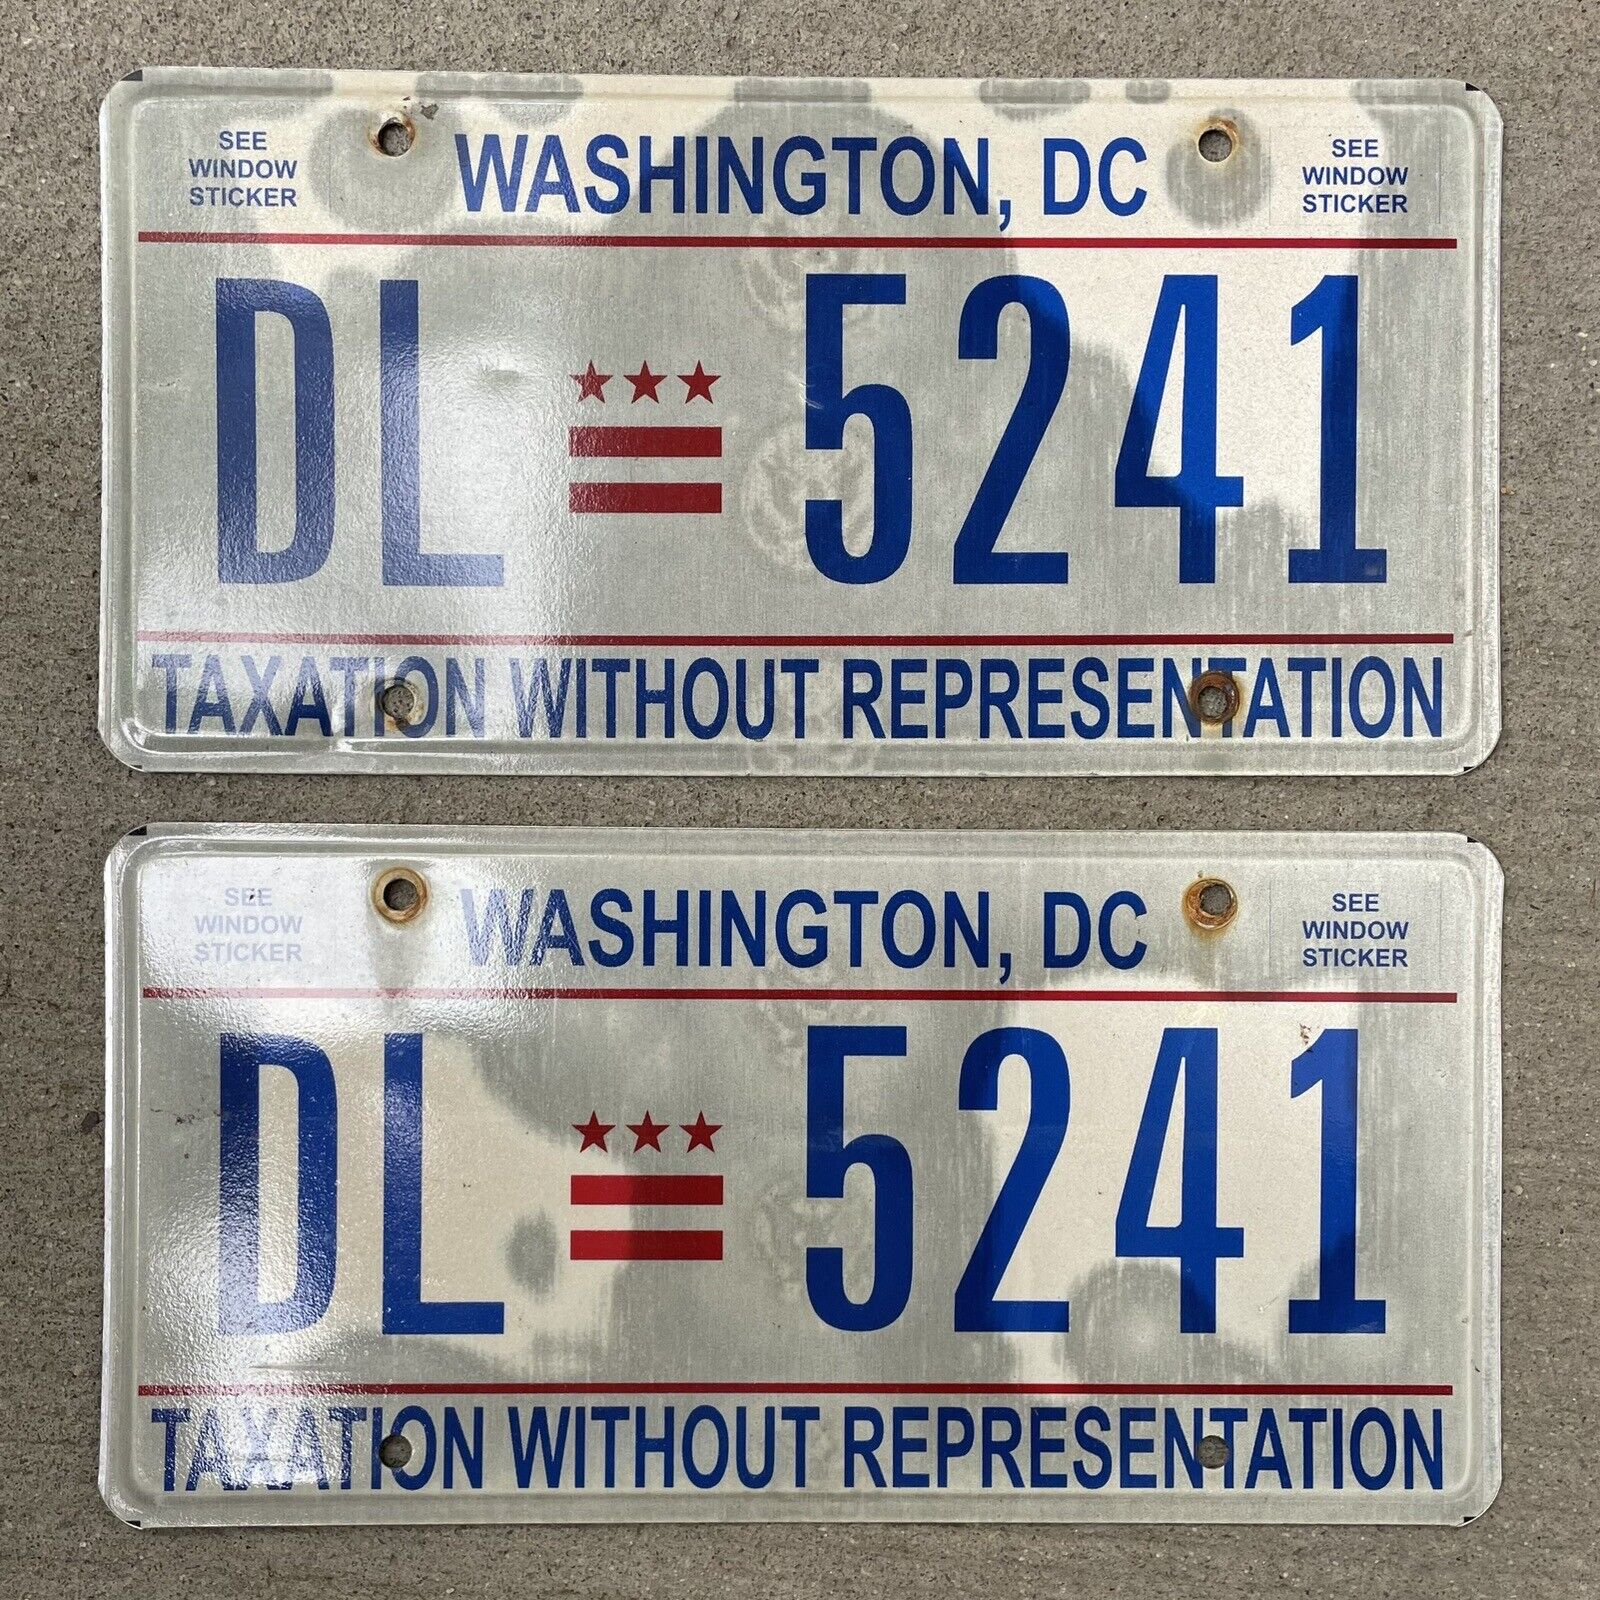 Double Washington DC LICENSE PLATES - DL 5241